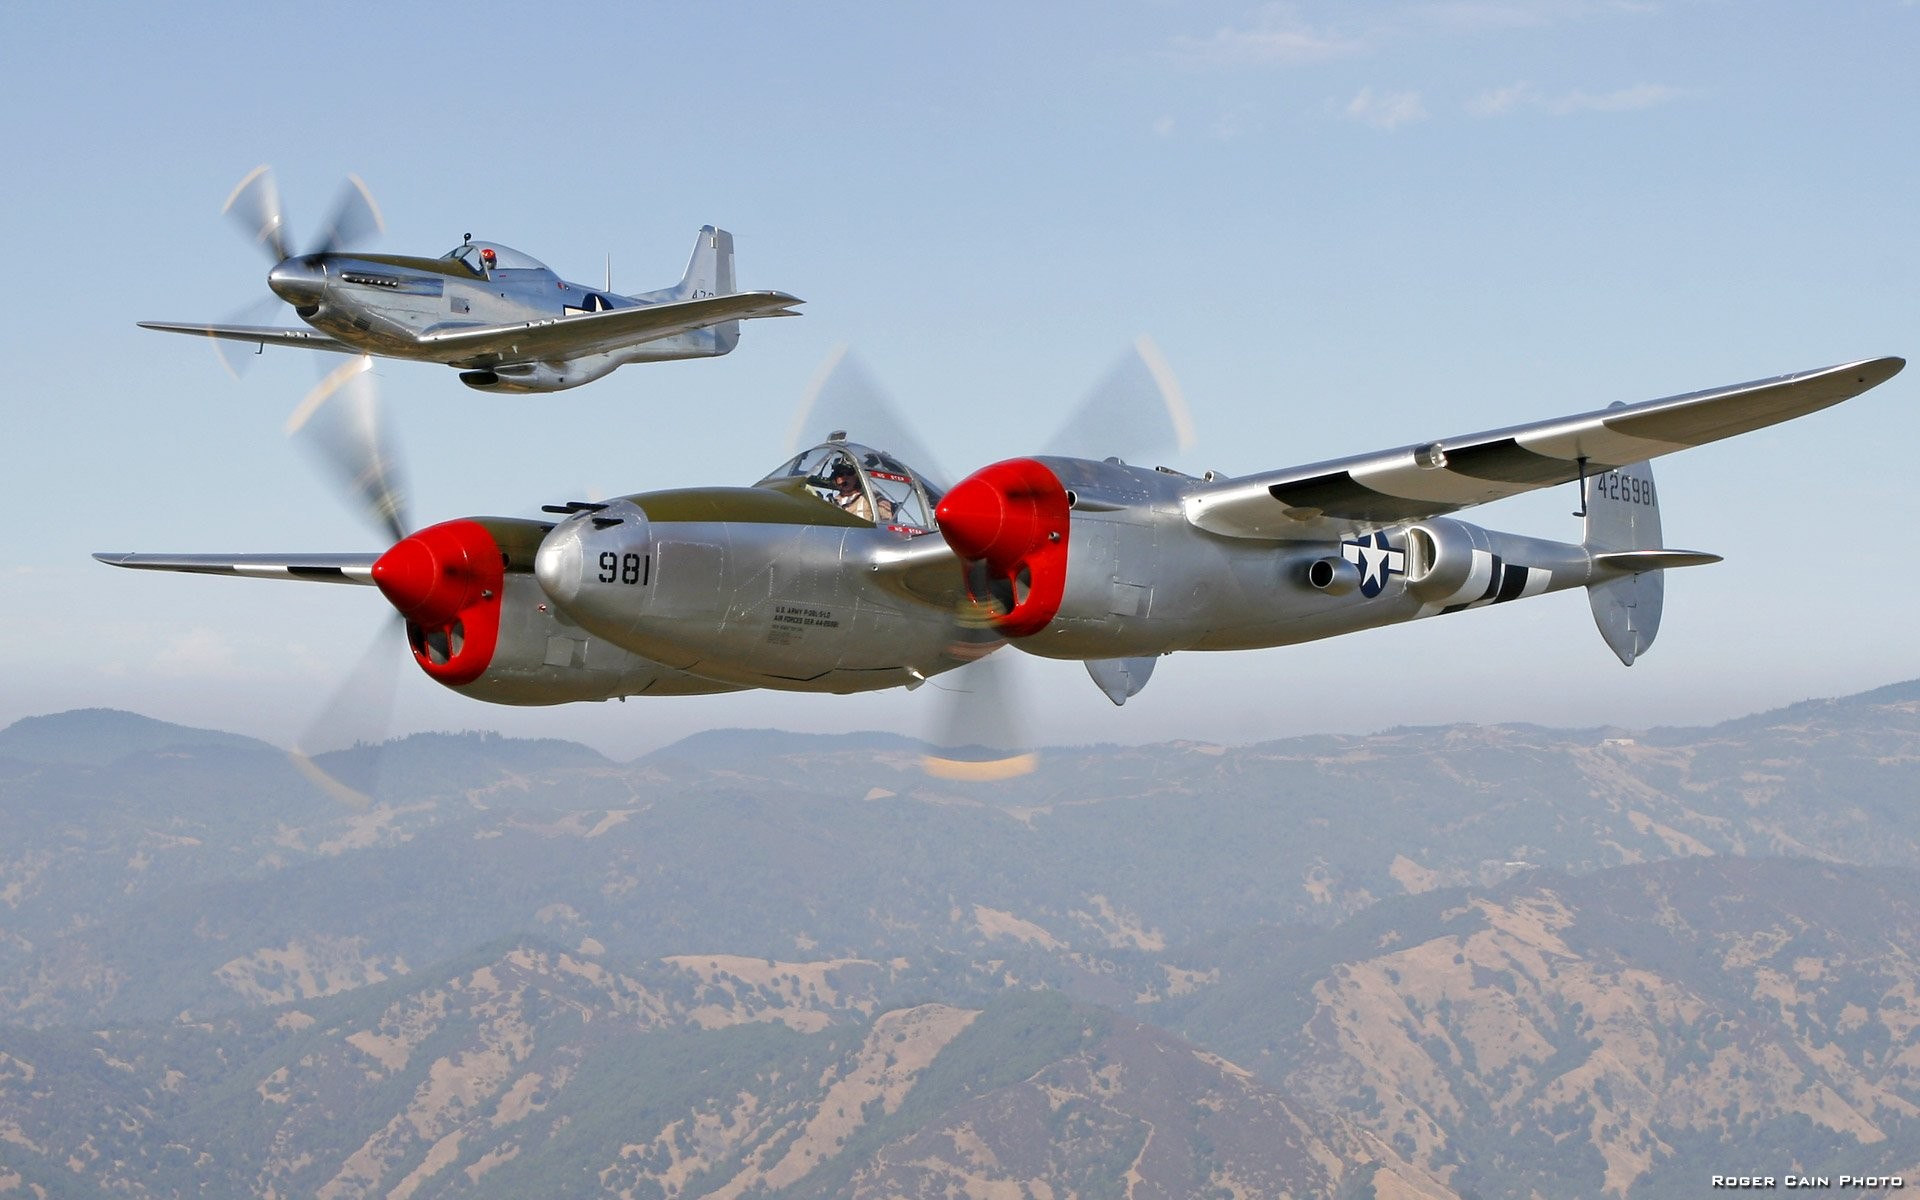 1920x1200 World War II P-38 Lightning P-51 Mustang wallpaper background .